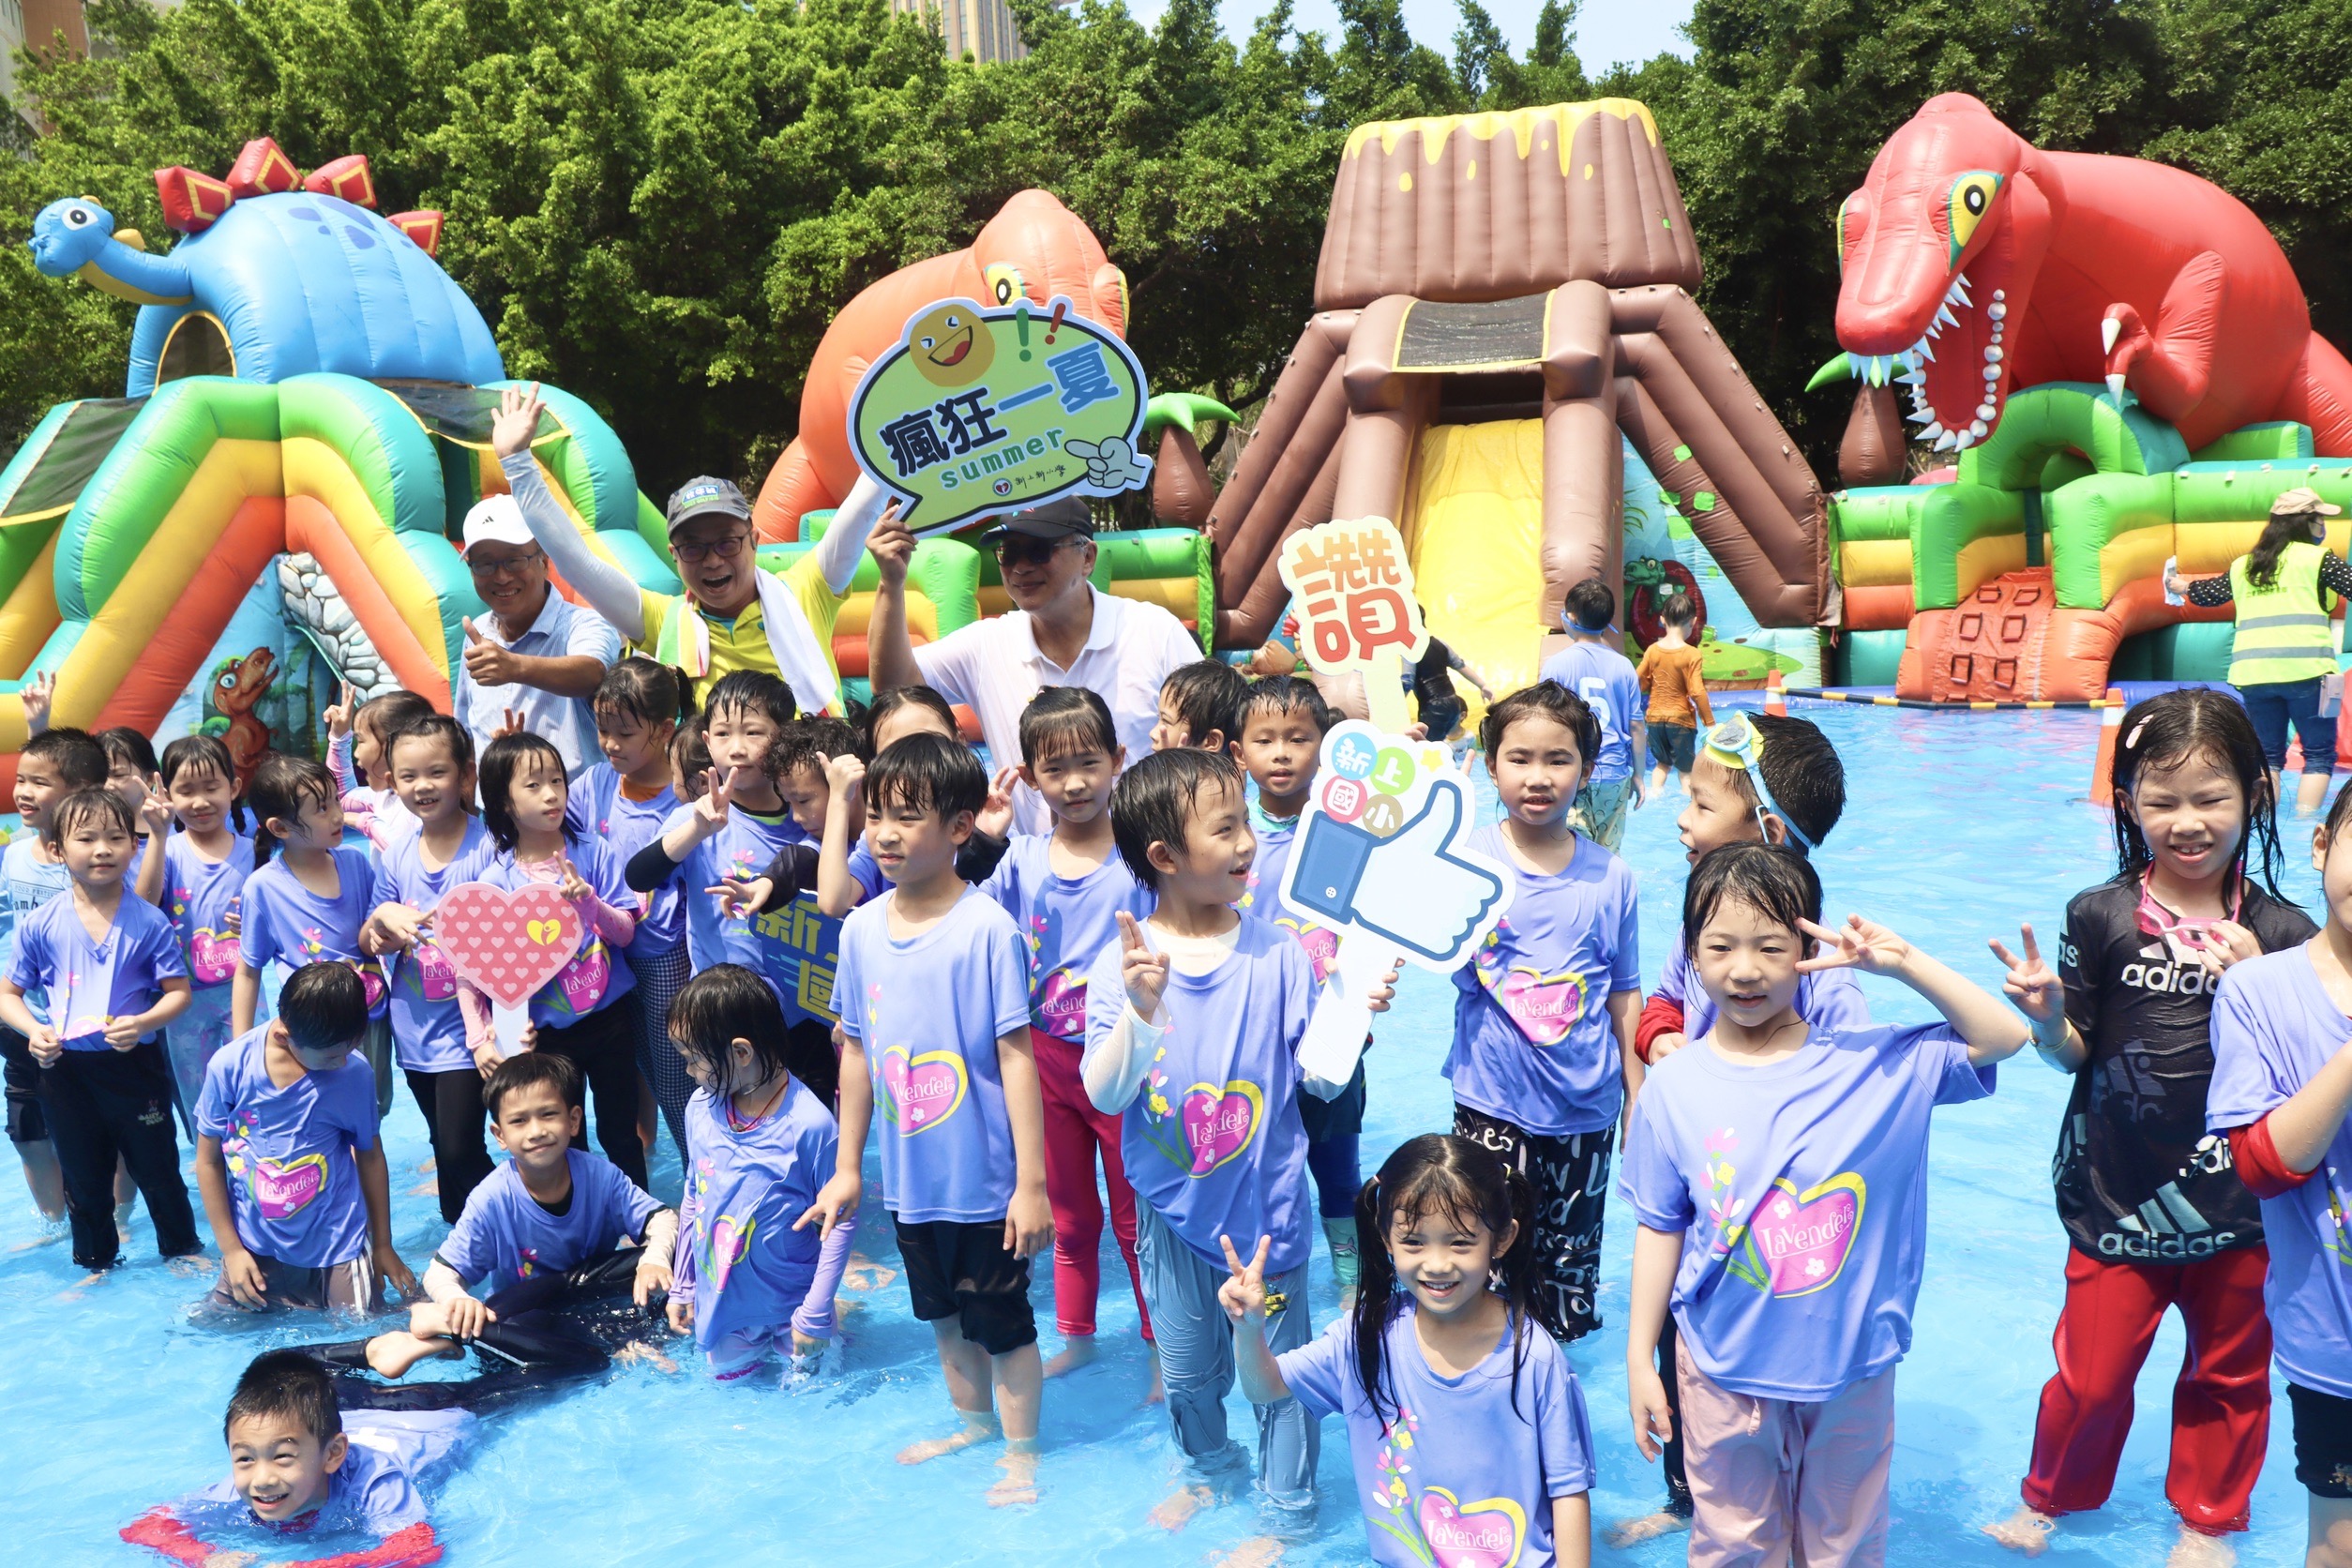 把儿童节放大18倍 何爷爷在新上国小打造全国最大校园场气垫乐园